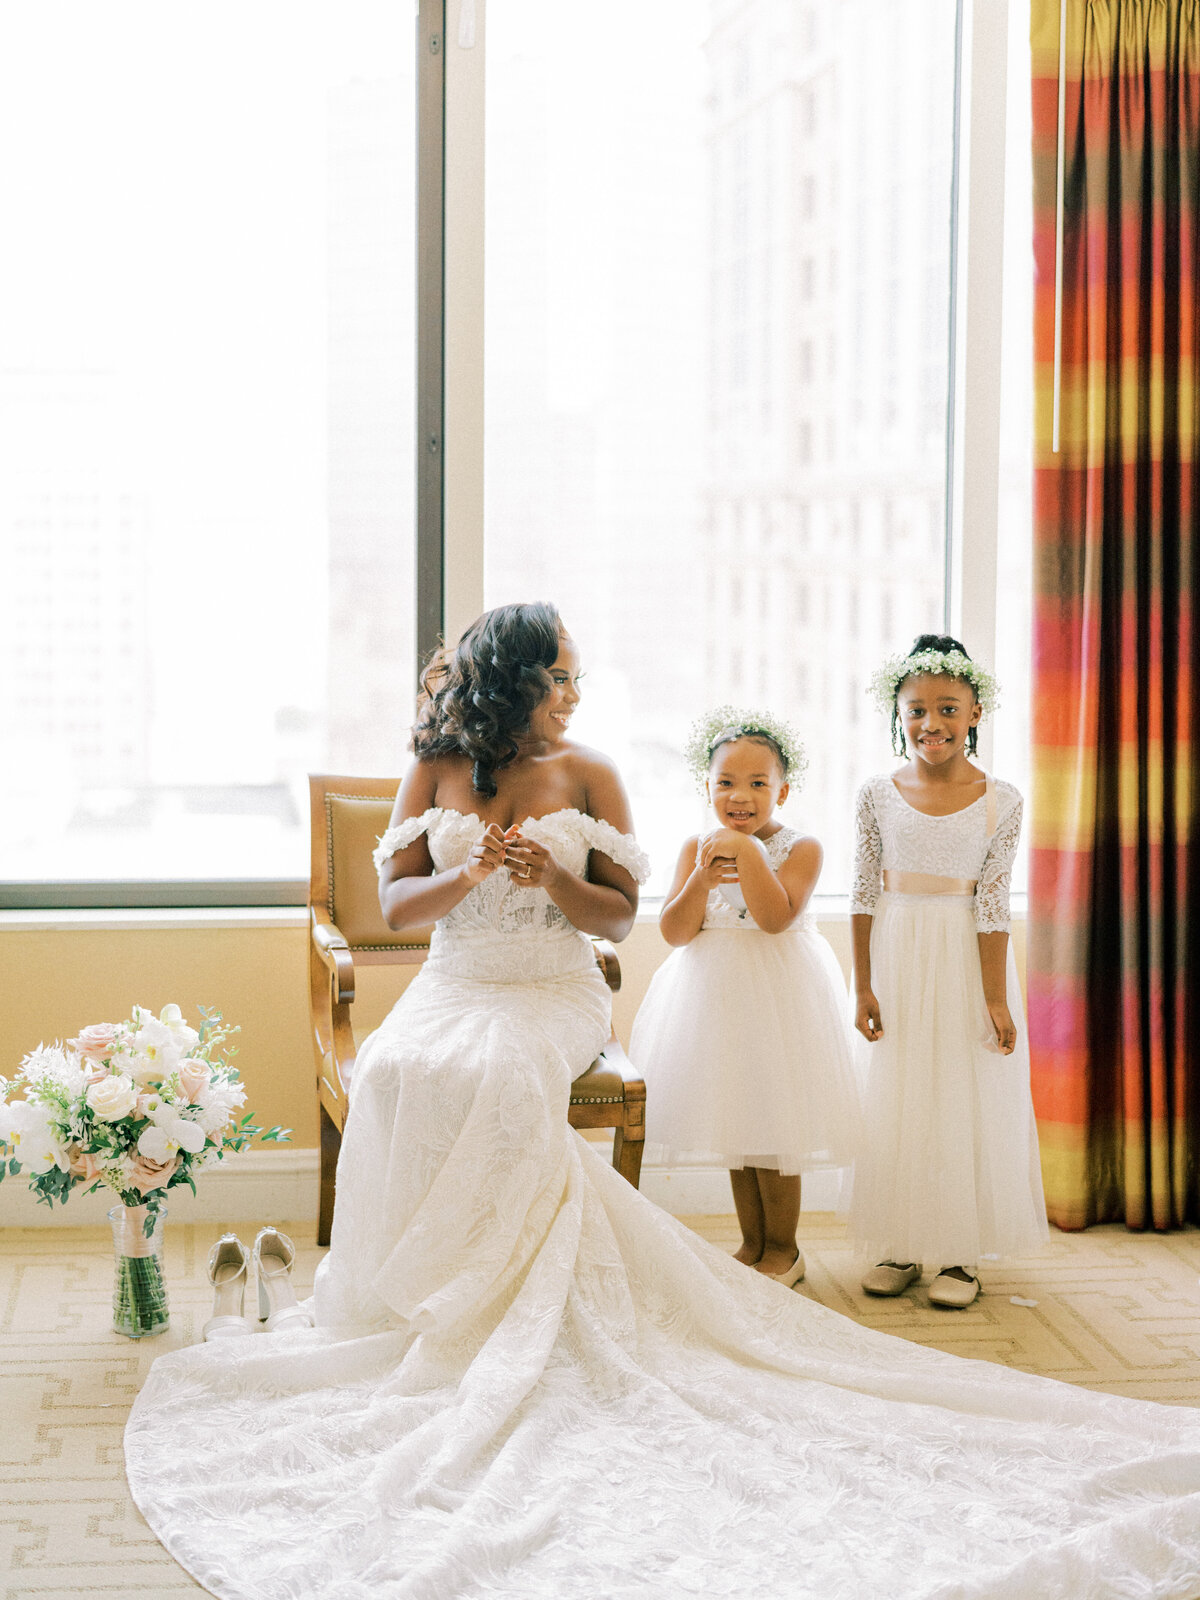 Chicago Film Wedding Photographer | Amarachi Ikeji Photography 33